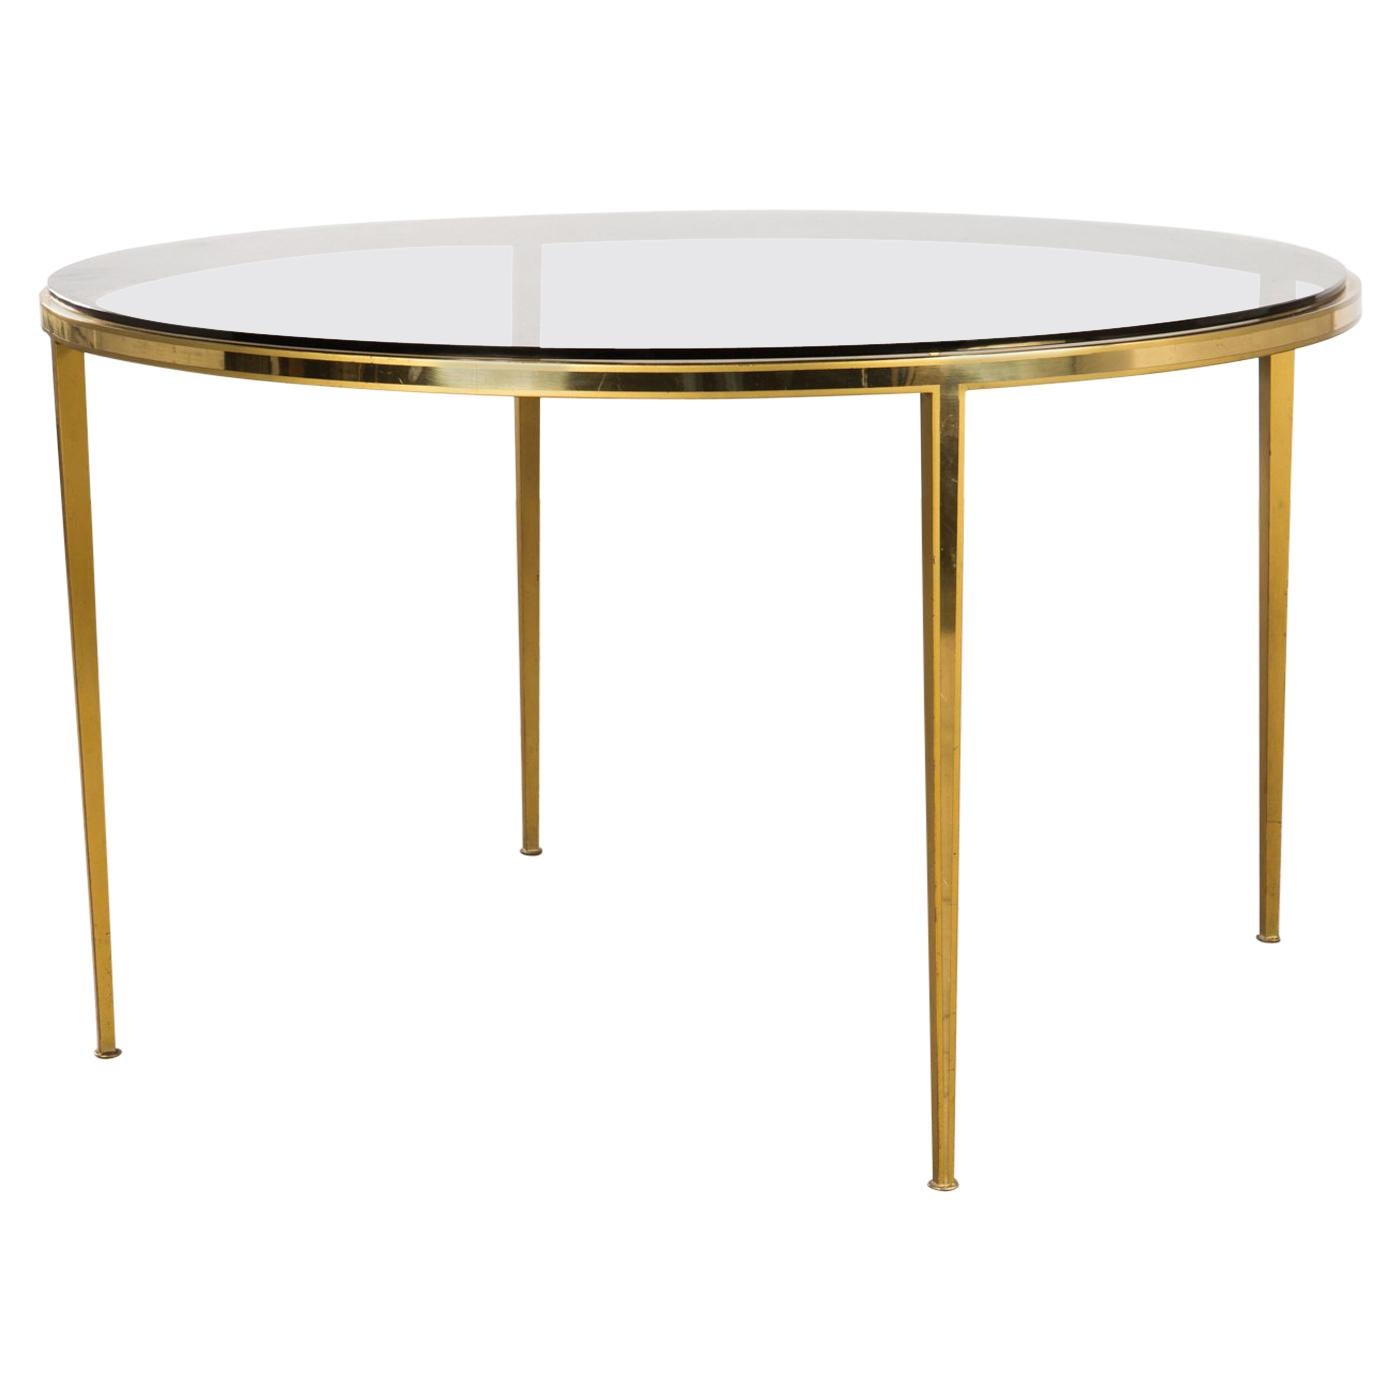 Table basse circulaire en laiton doré de style mi-siècle moderne par Vereinigte Werkstätten